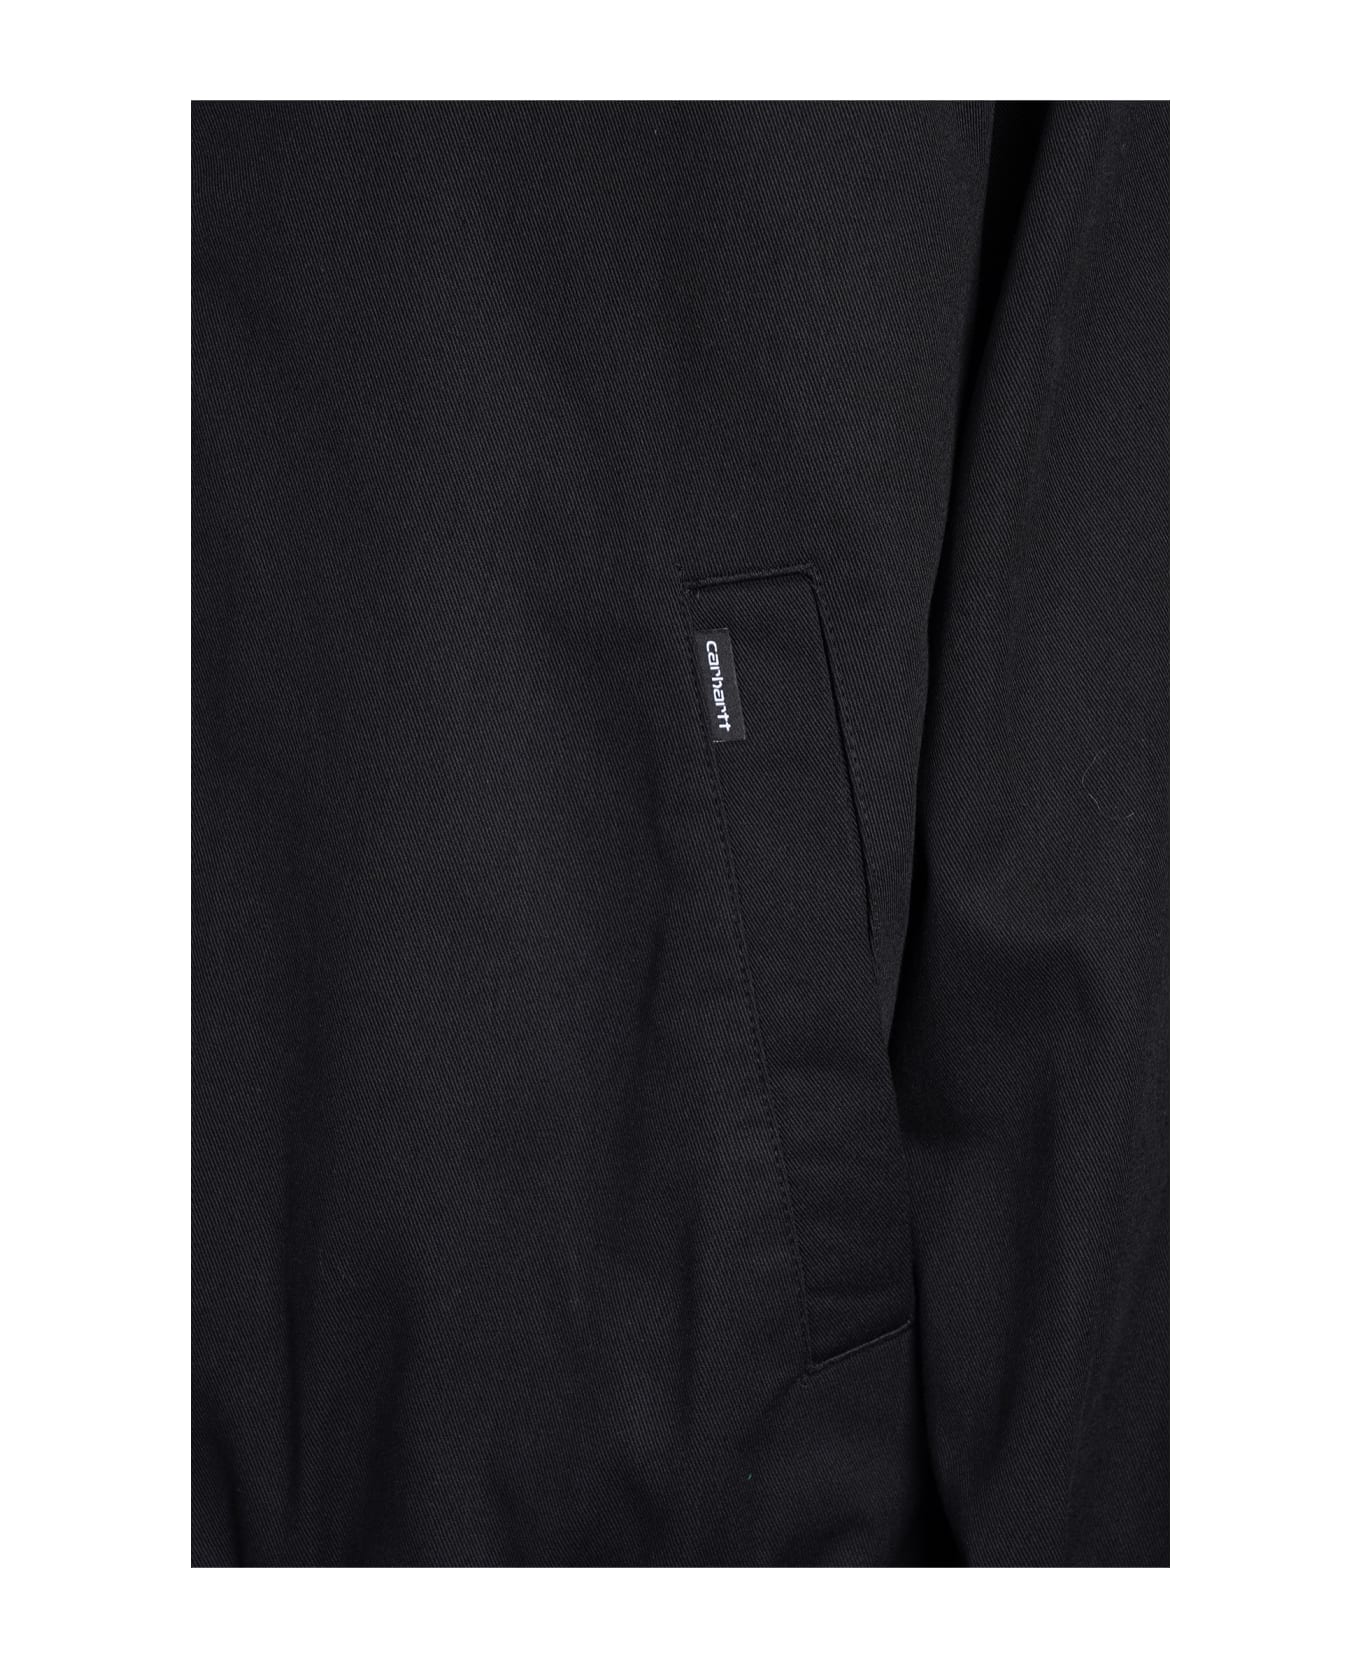 Carhartt WIP Casual Jacket In Black printed - Nero